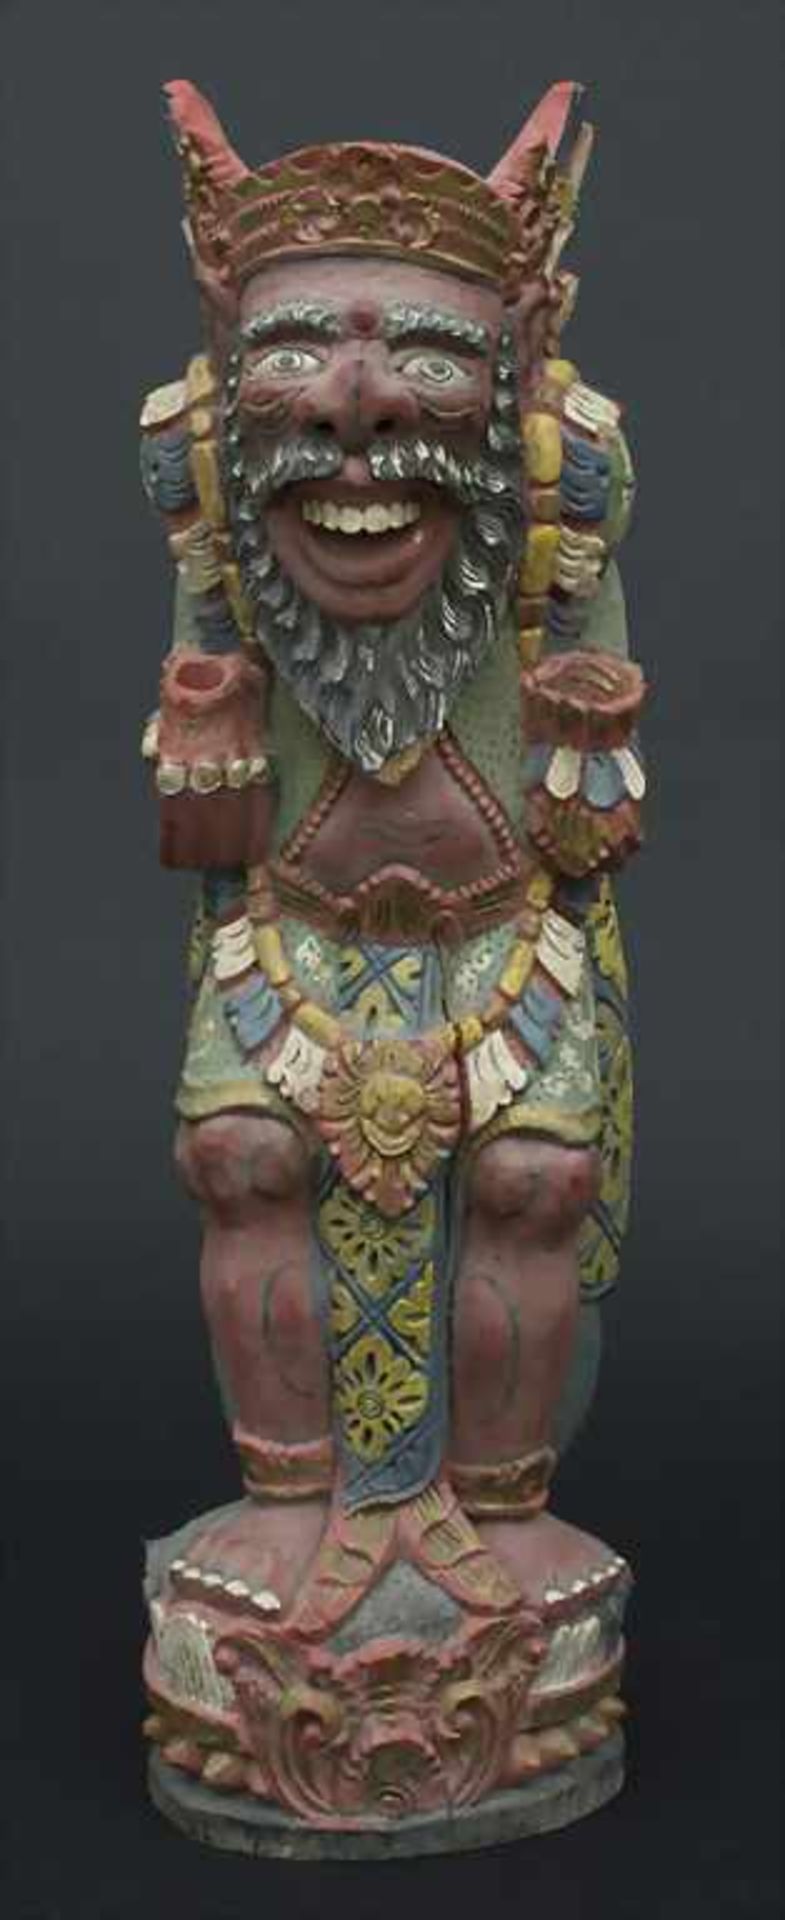 Holzfigur 'Schutzgott' / A wooden figure 'Protective God', Bali, 20. Jh.Material: Holz,